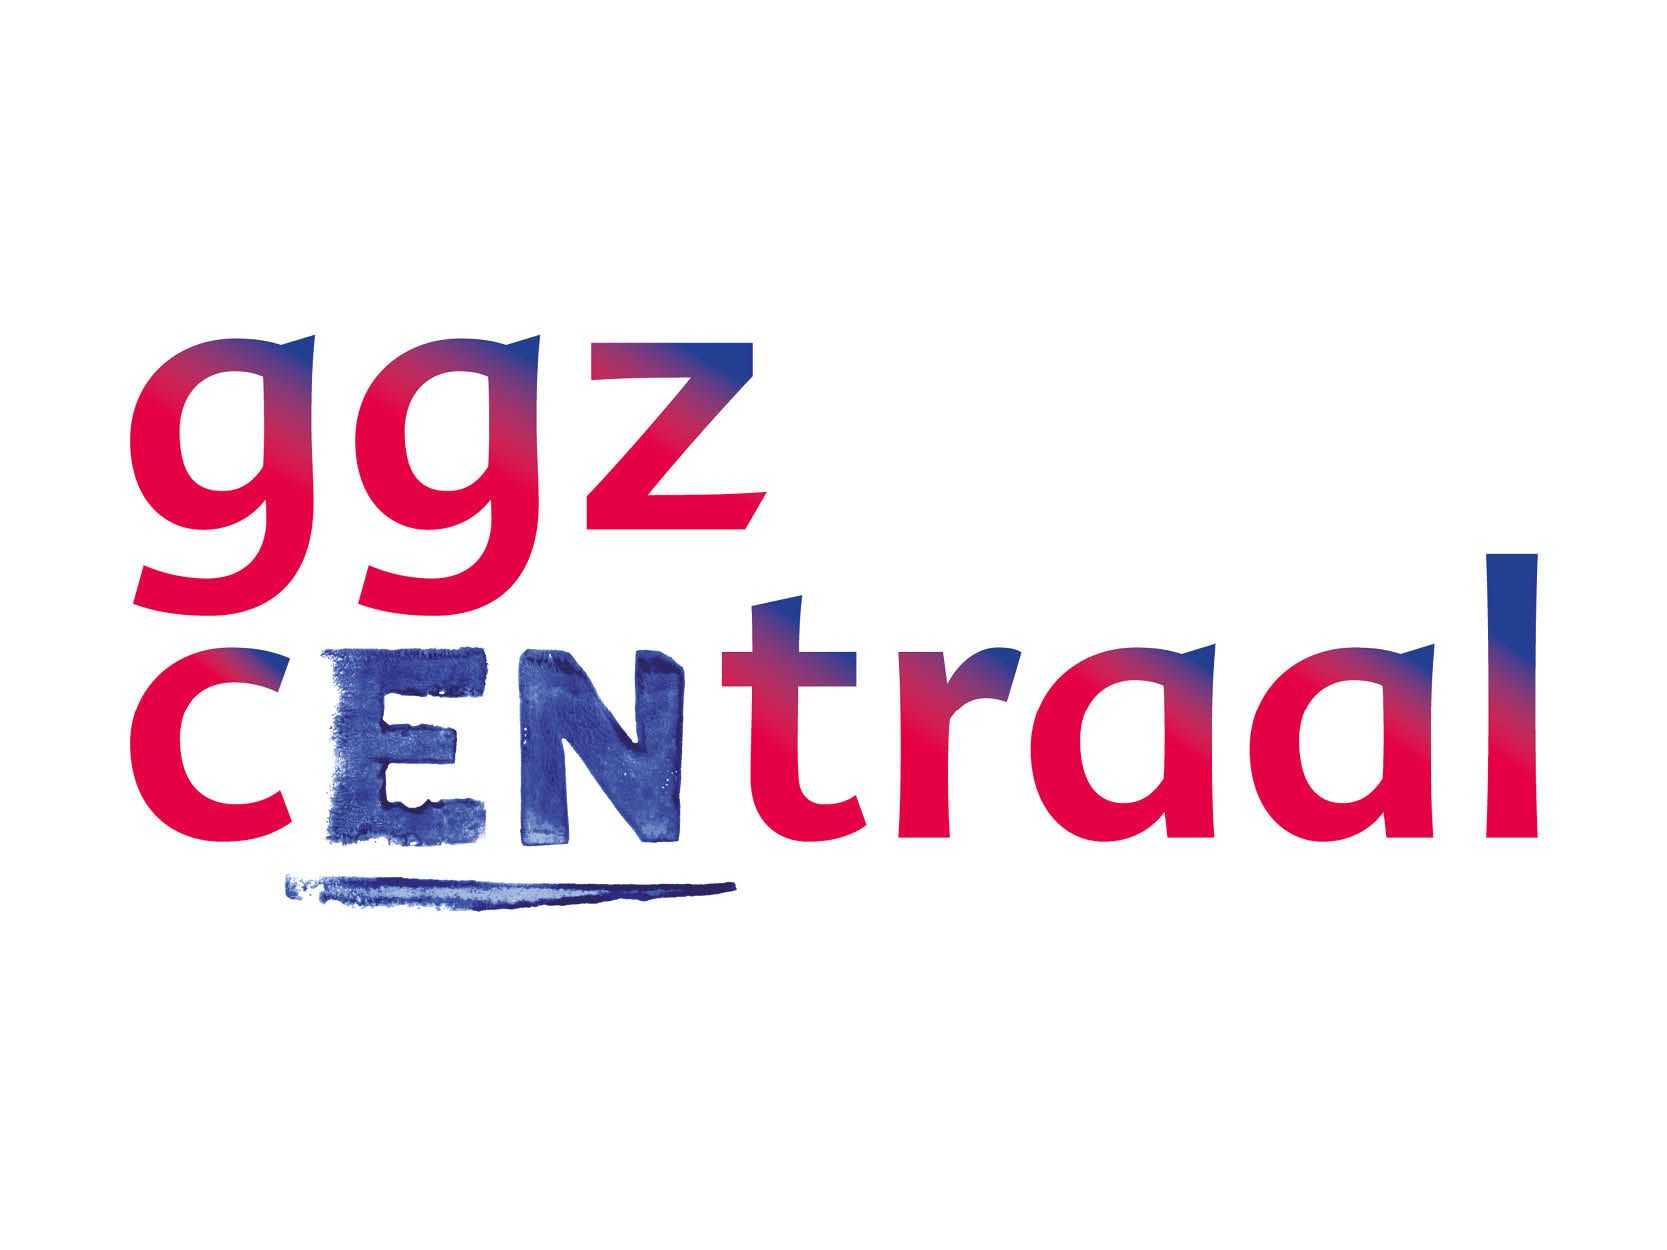 Logo GGZ Centraal